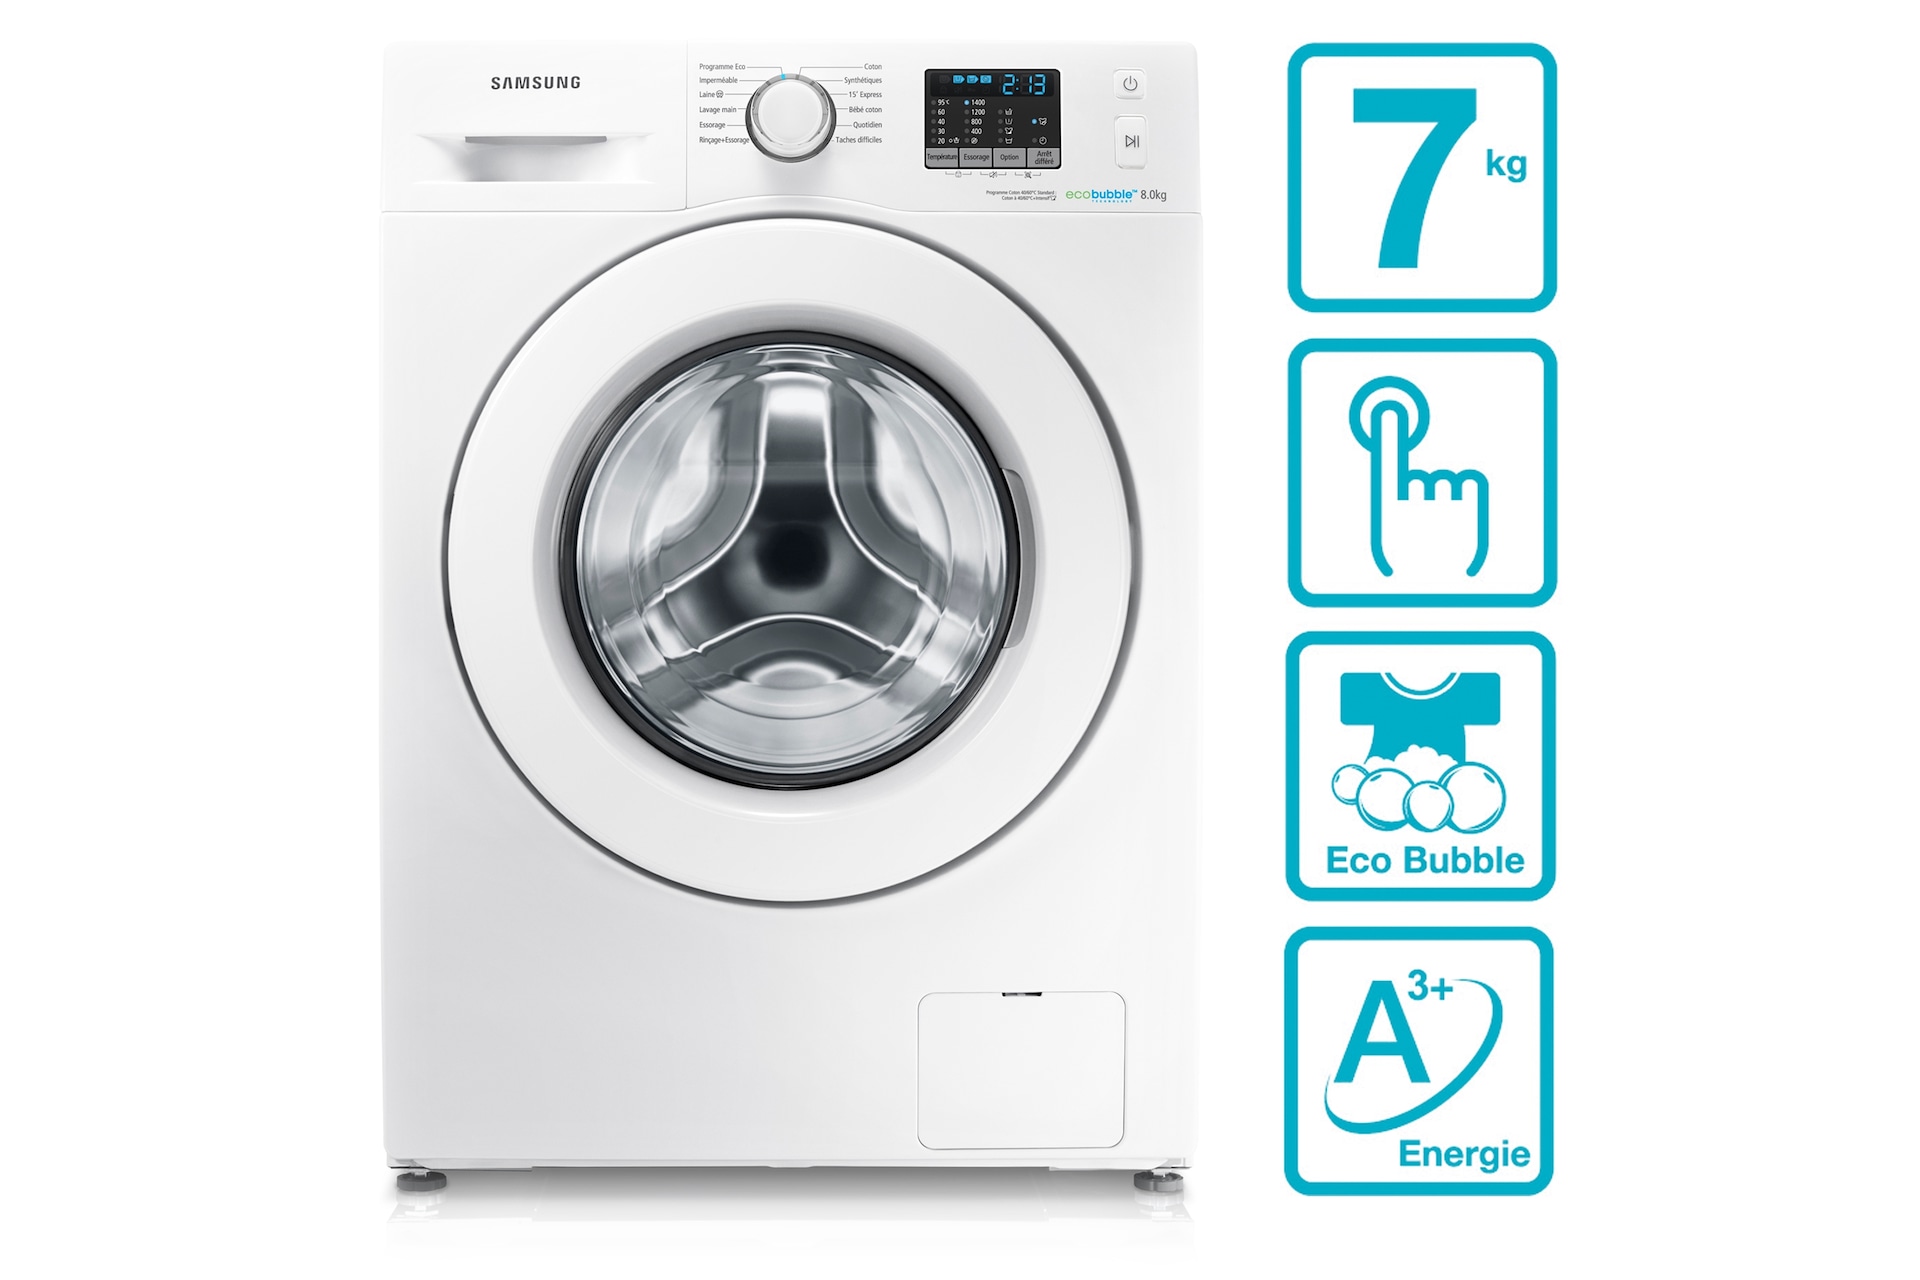 samsung ecobubble washing machine 7kg instructions